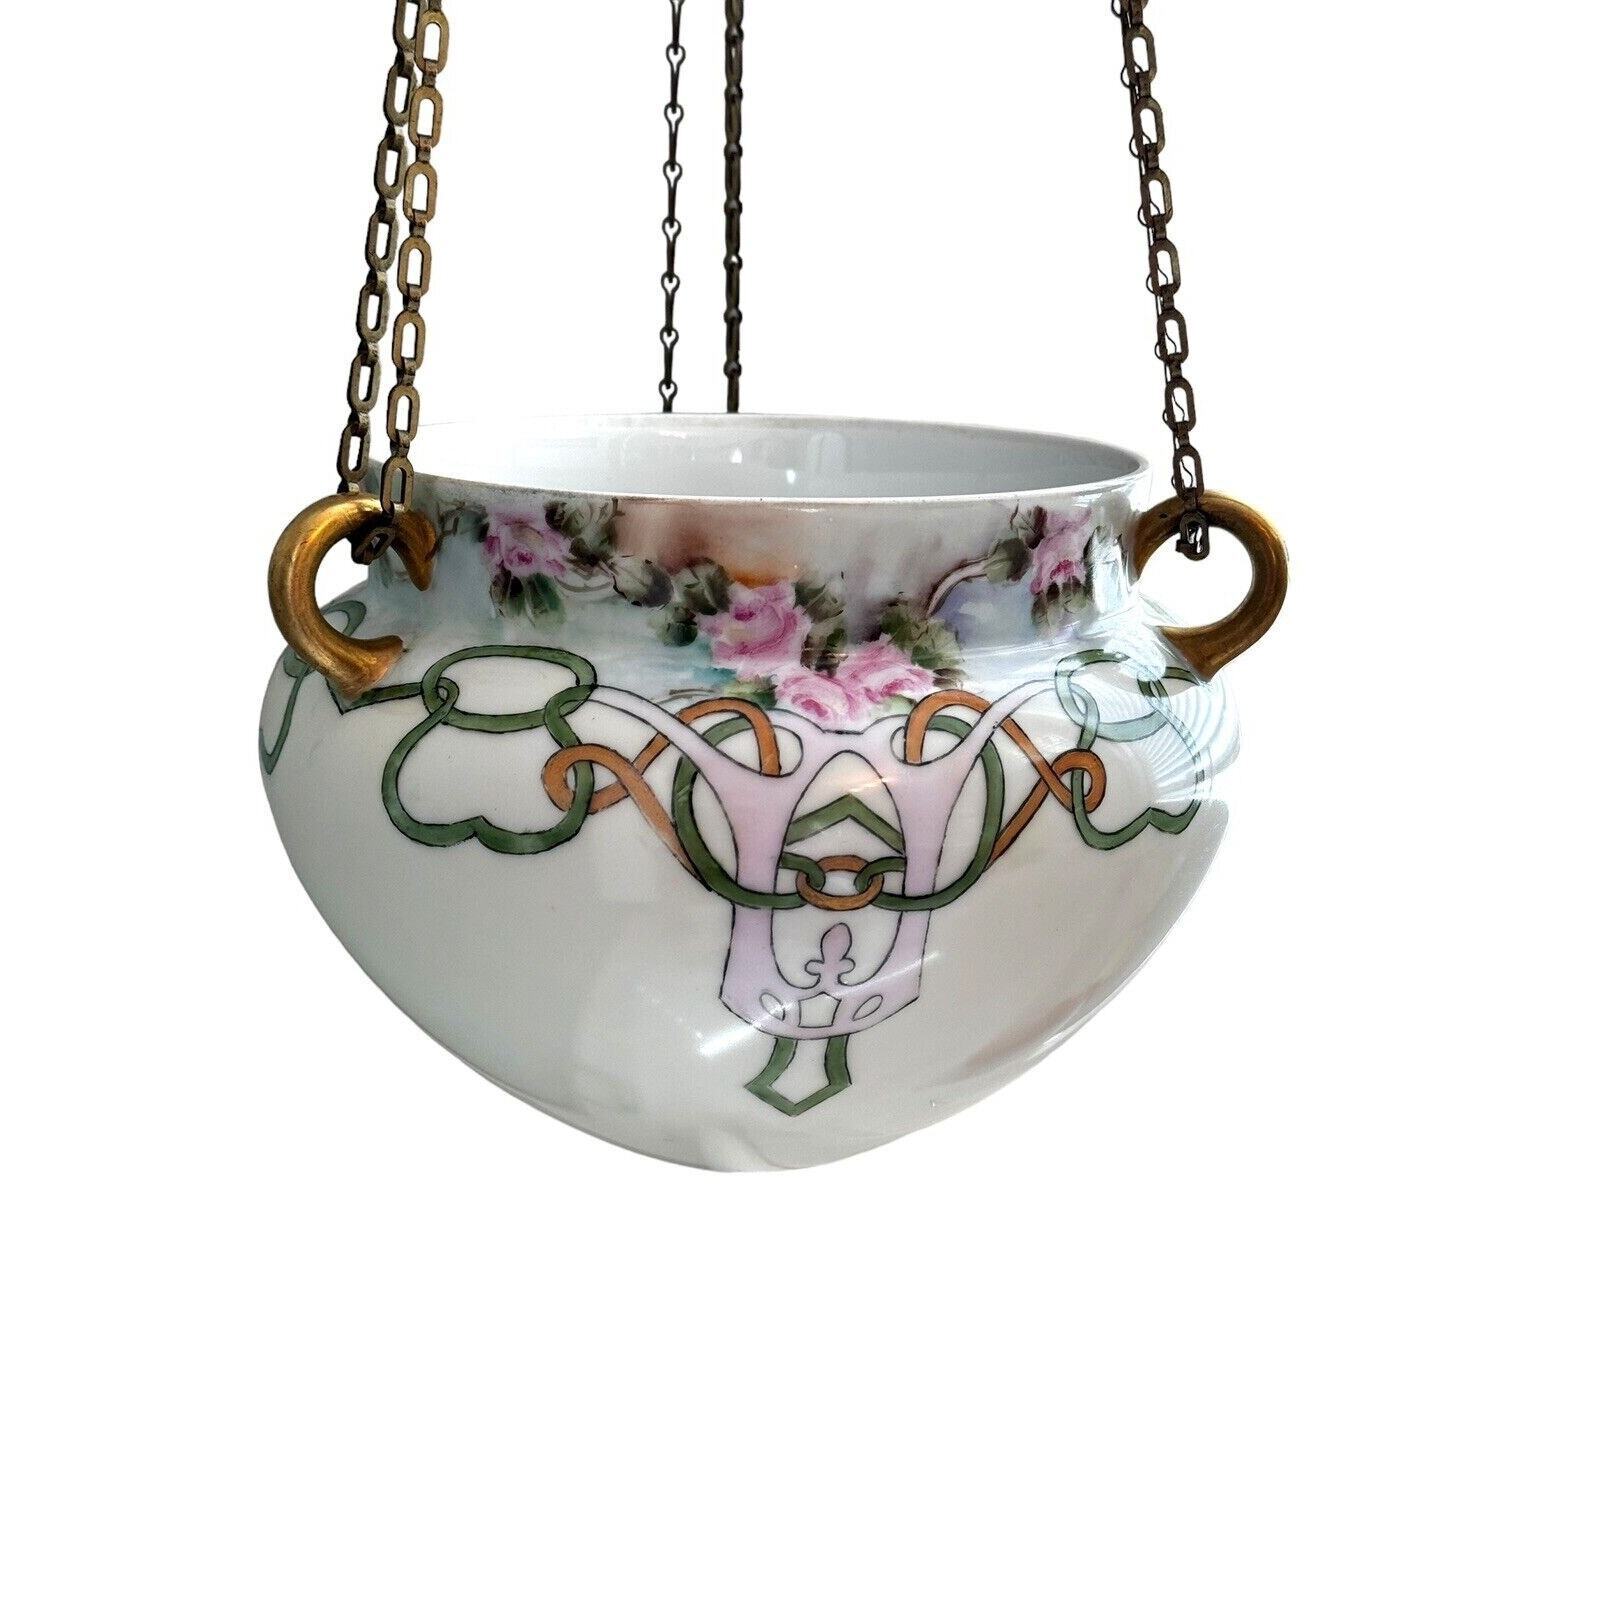 Antique Victorian Art Deco Pot Jardiniere Ferner Porcelain Hanging Cache Planter